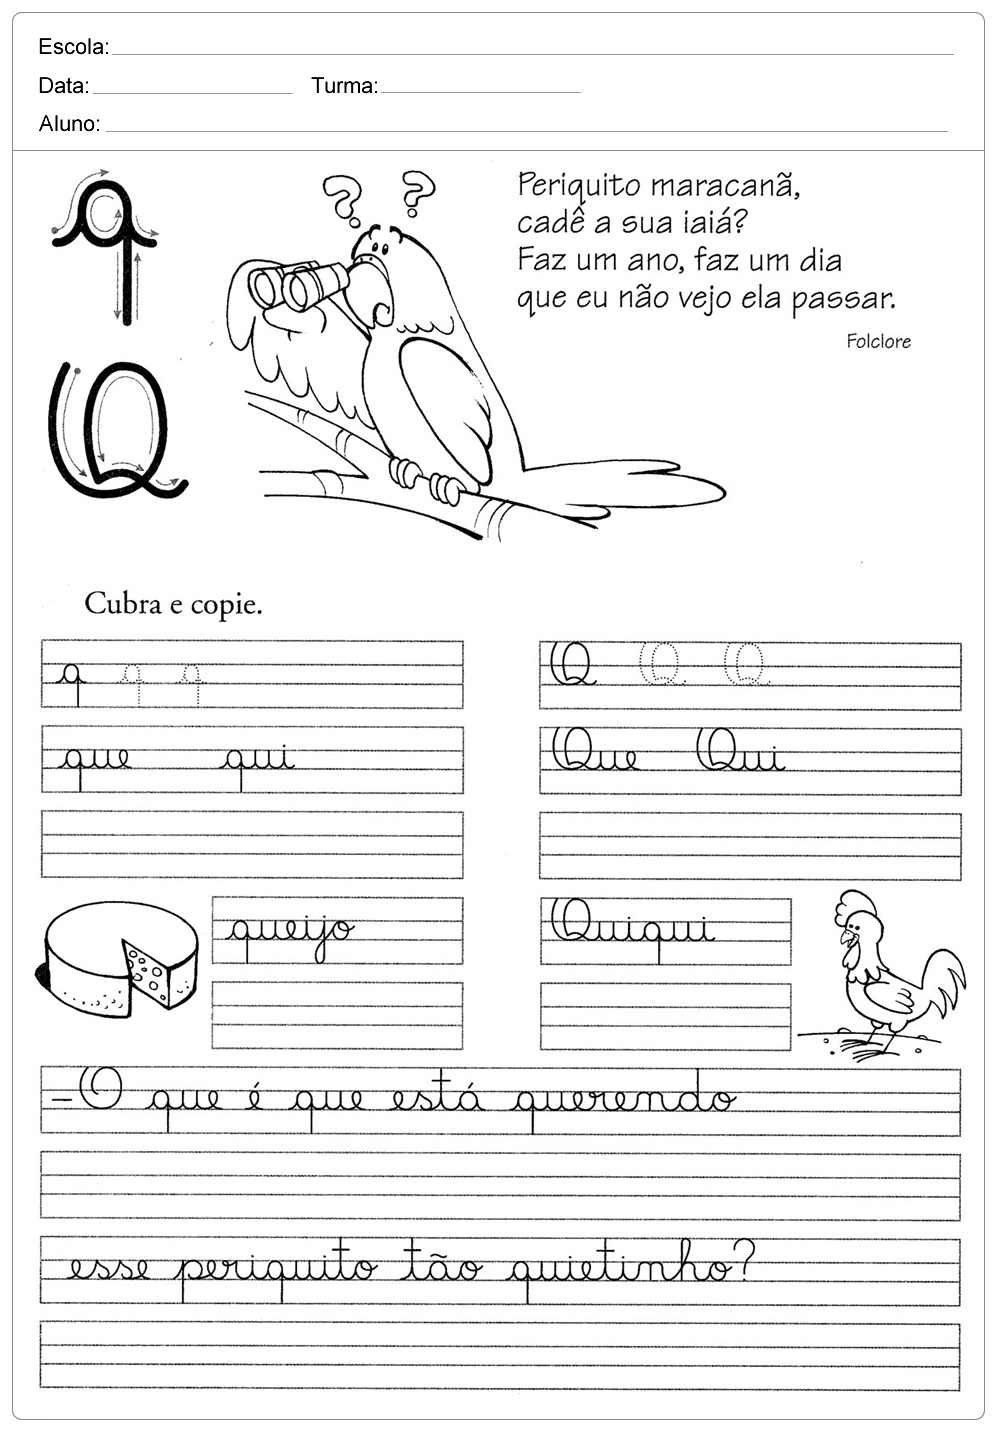 Atividades de caligrafia com a letra Q  - para imprimir